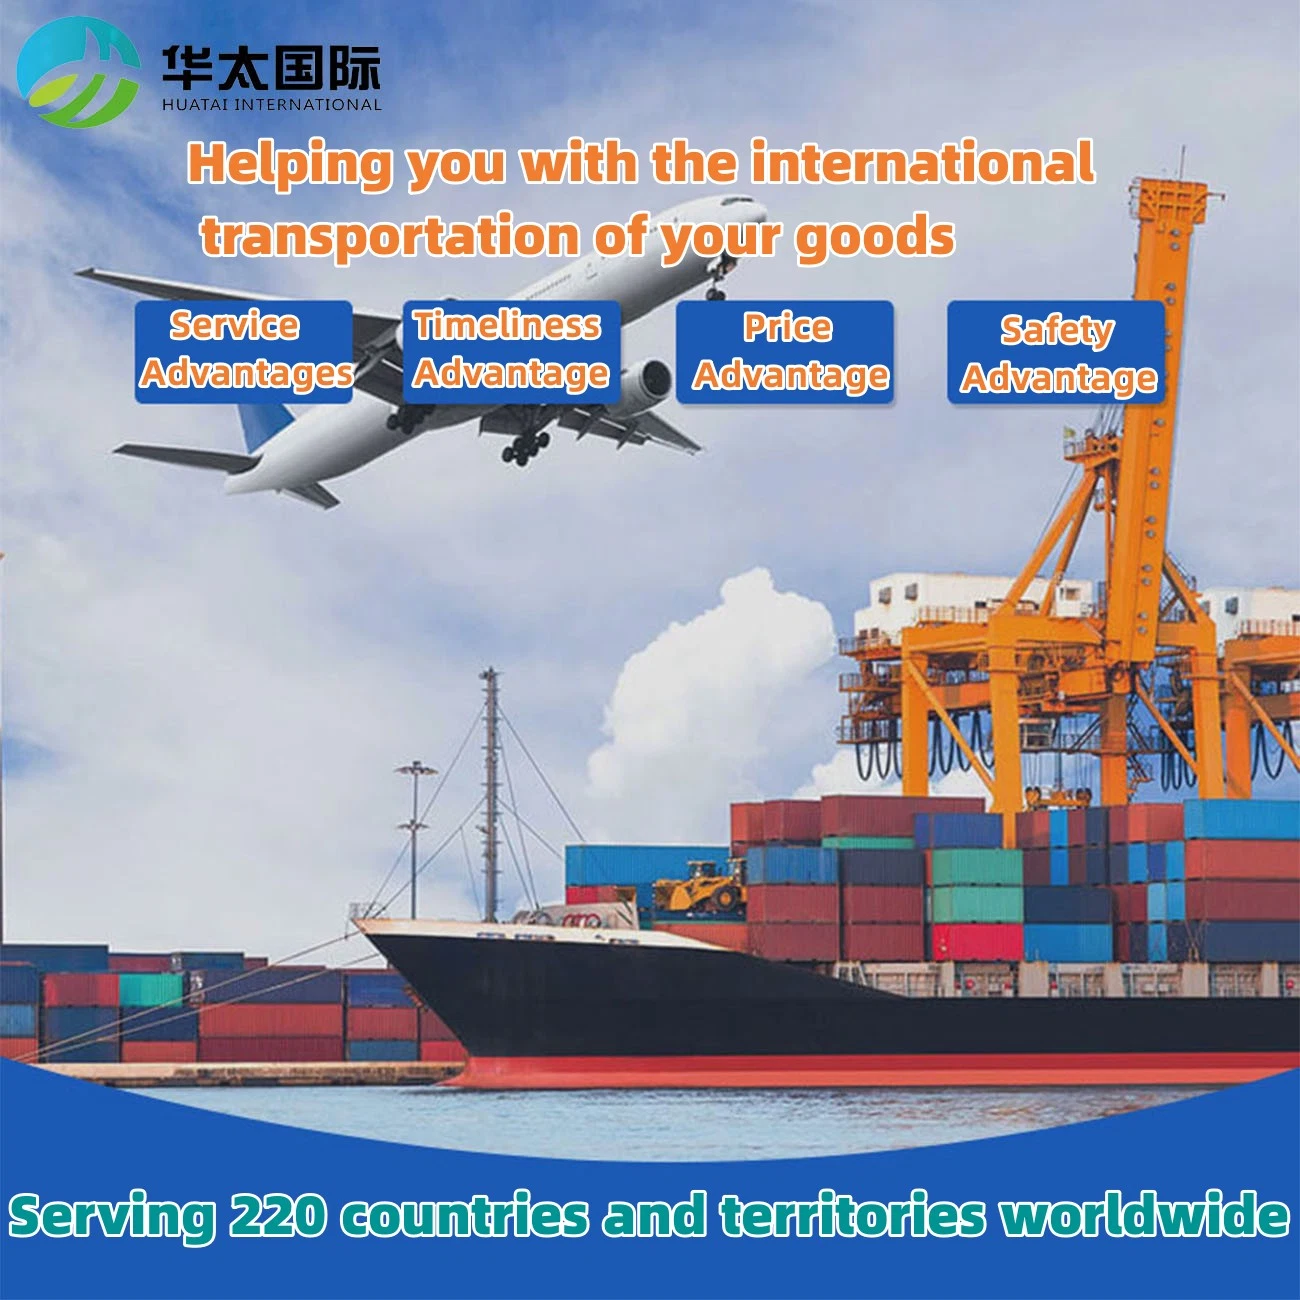 De la Chine à l'Uruguay, services de livraison internationale porte à porte de DHL/UPS/FedEx.